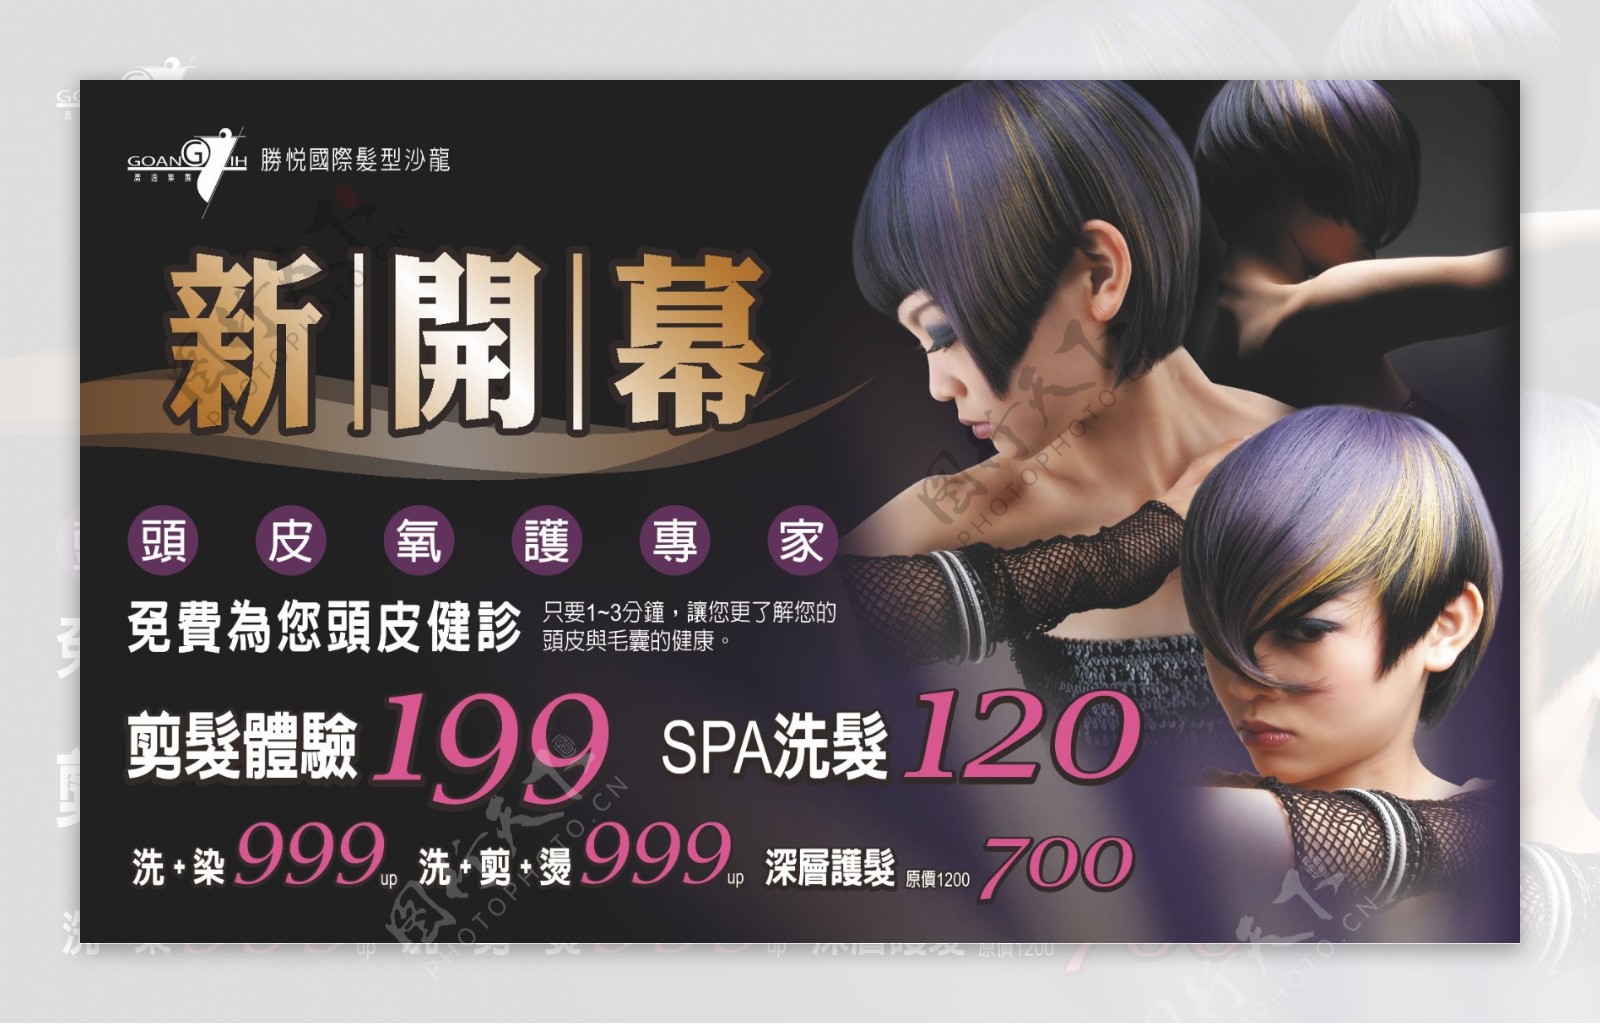 台湾某发型沙龙开幕广告图片